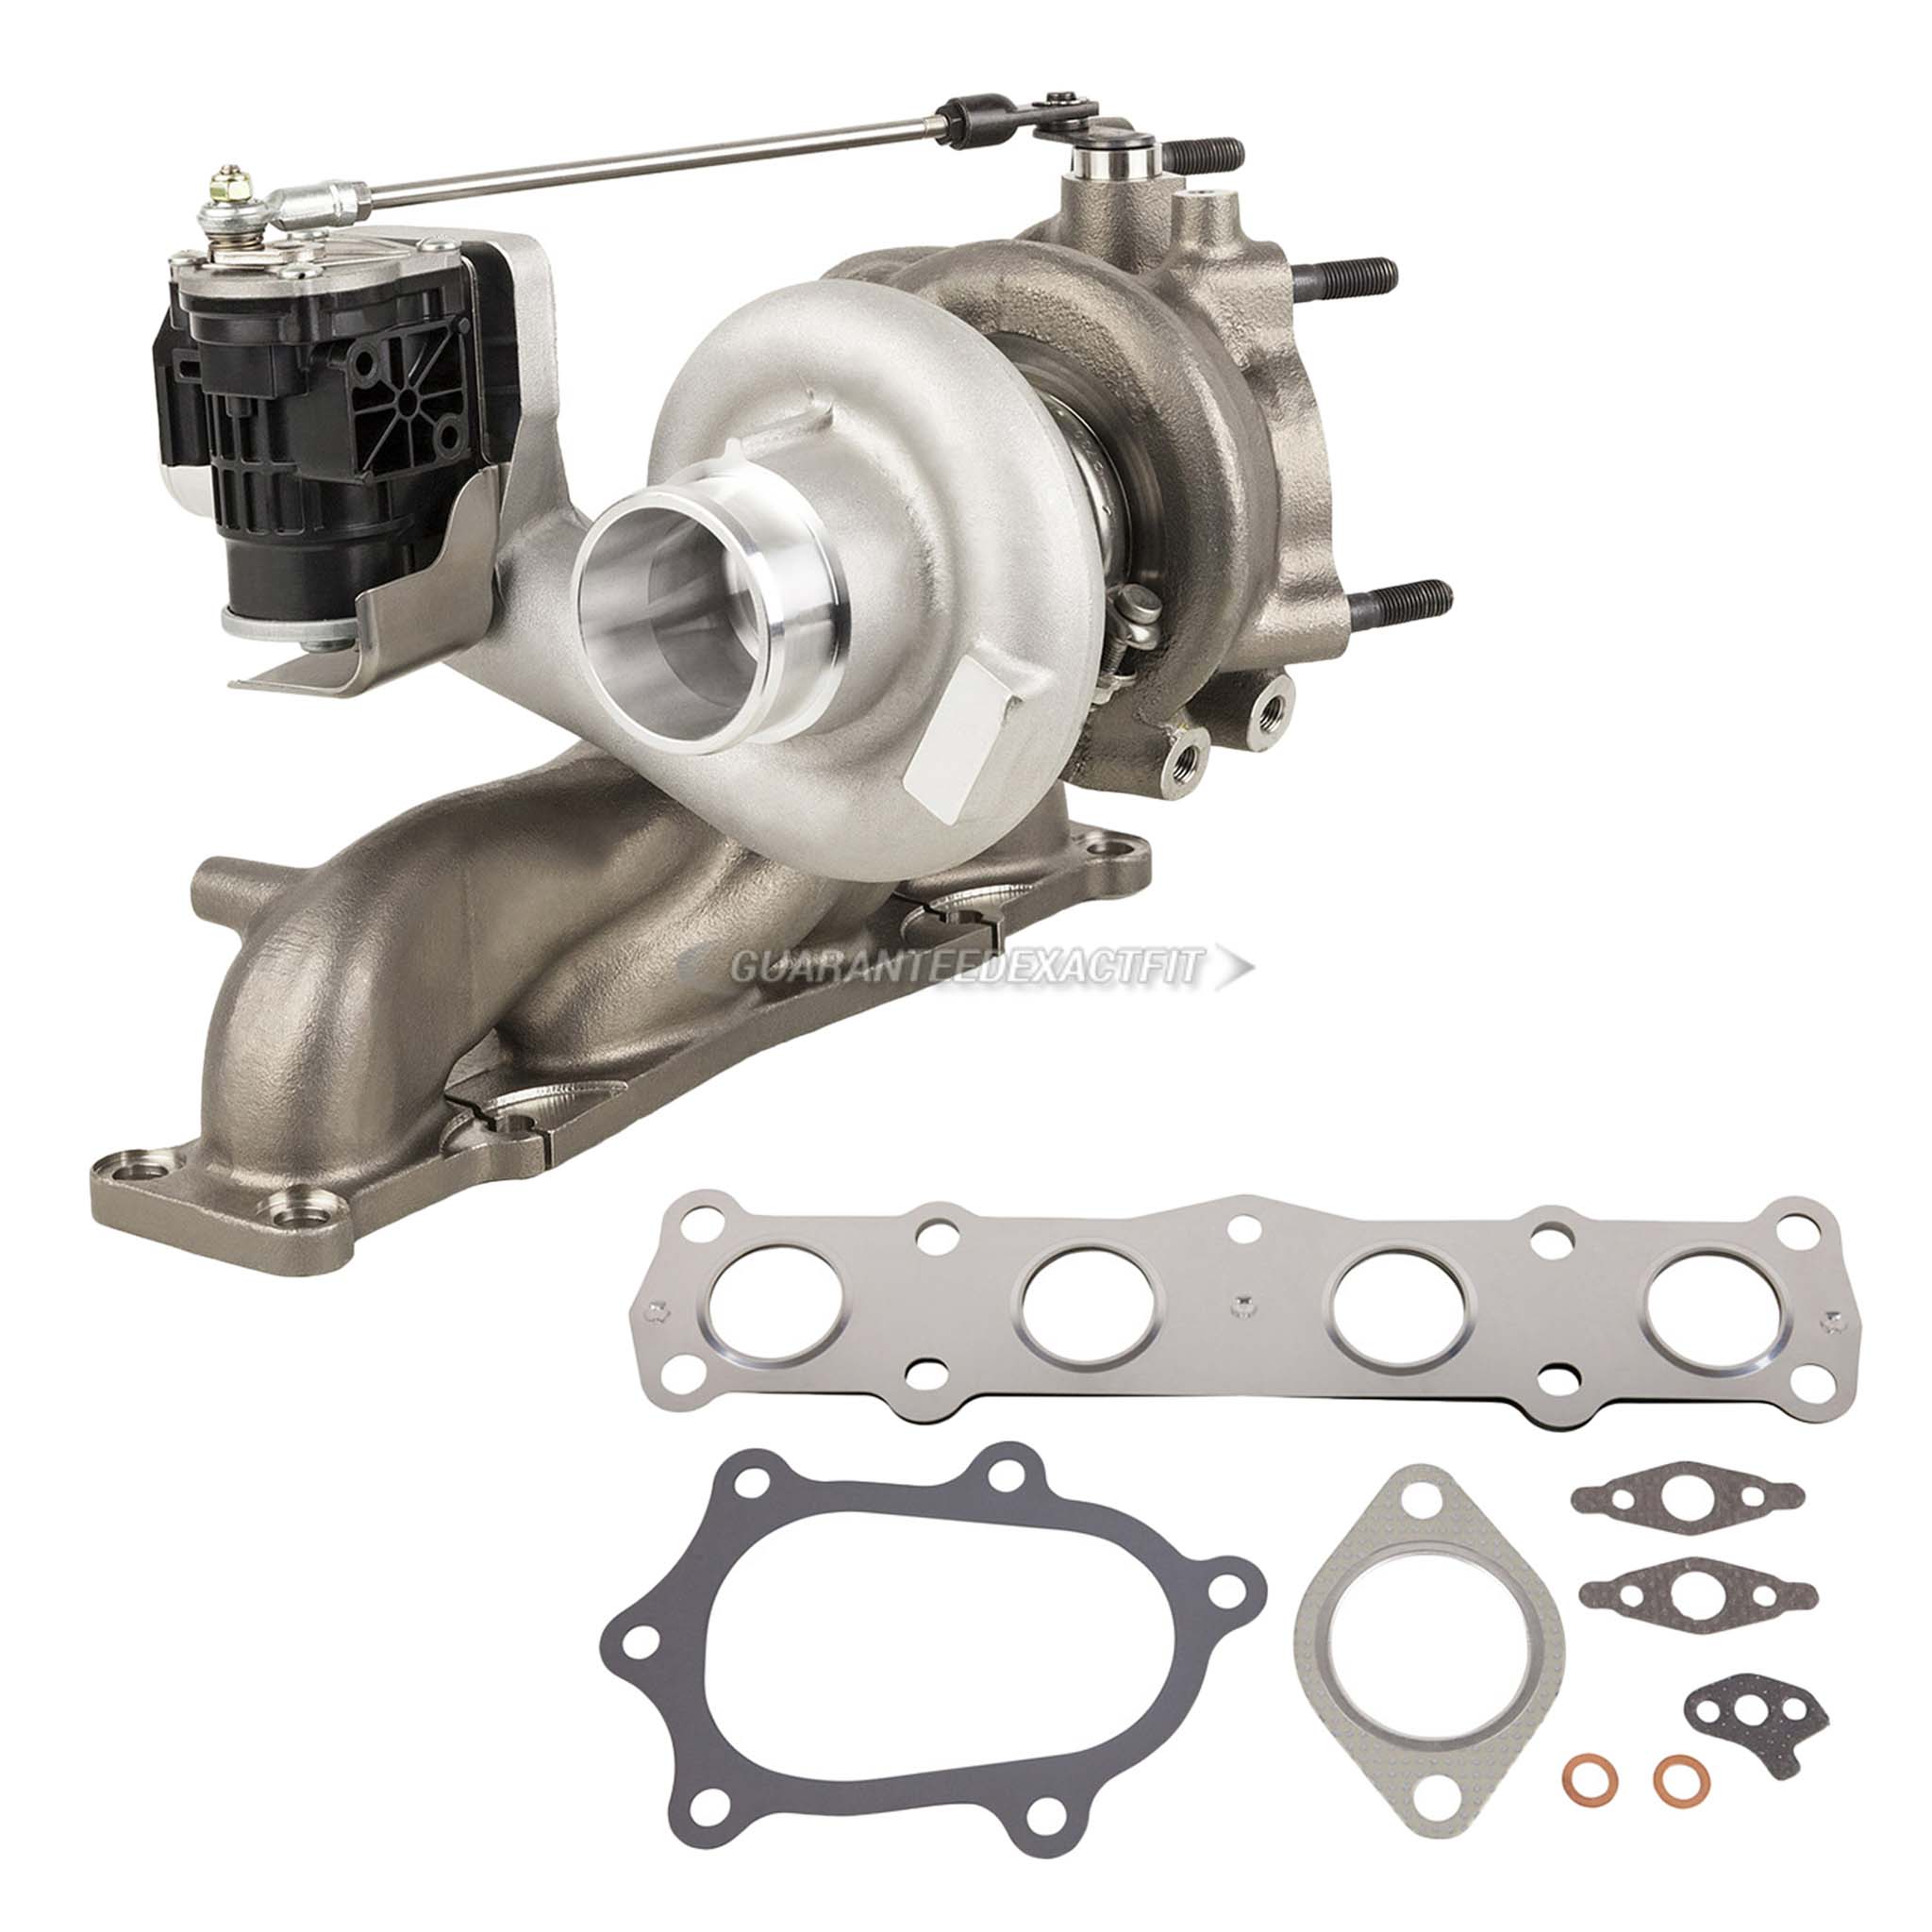 2014 Hyundai Santa Fe Sport Turbocharger and Installation Accessory Kit 